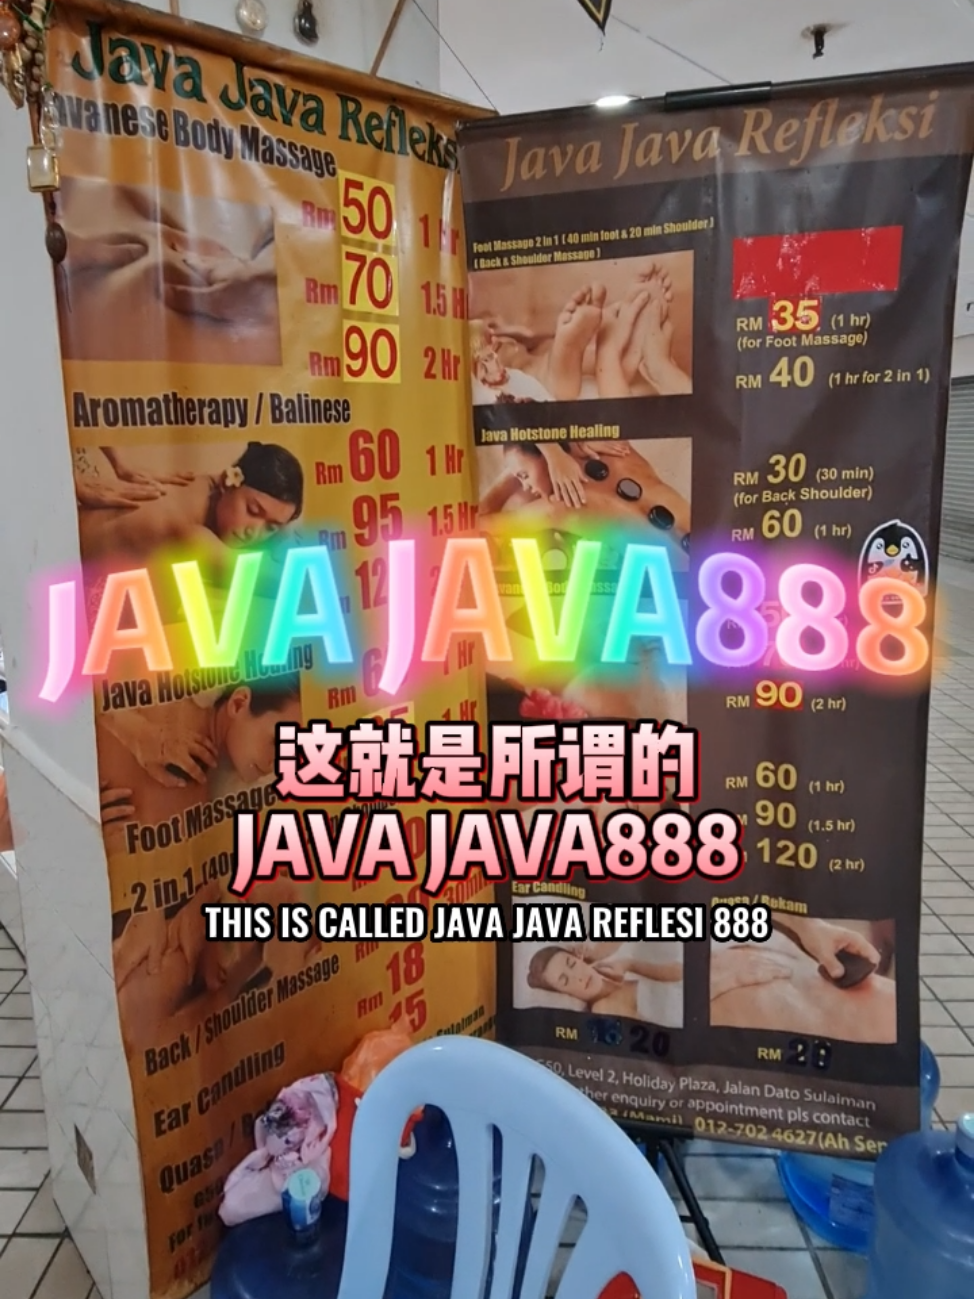 Authentic Javanese massage at Java Java Refleksi 's images